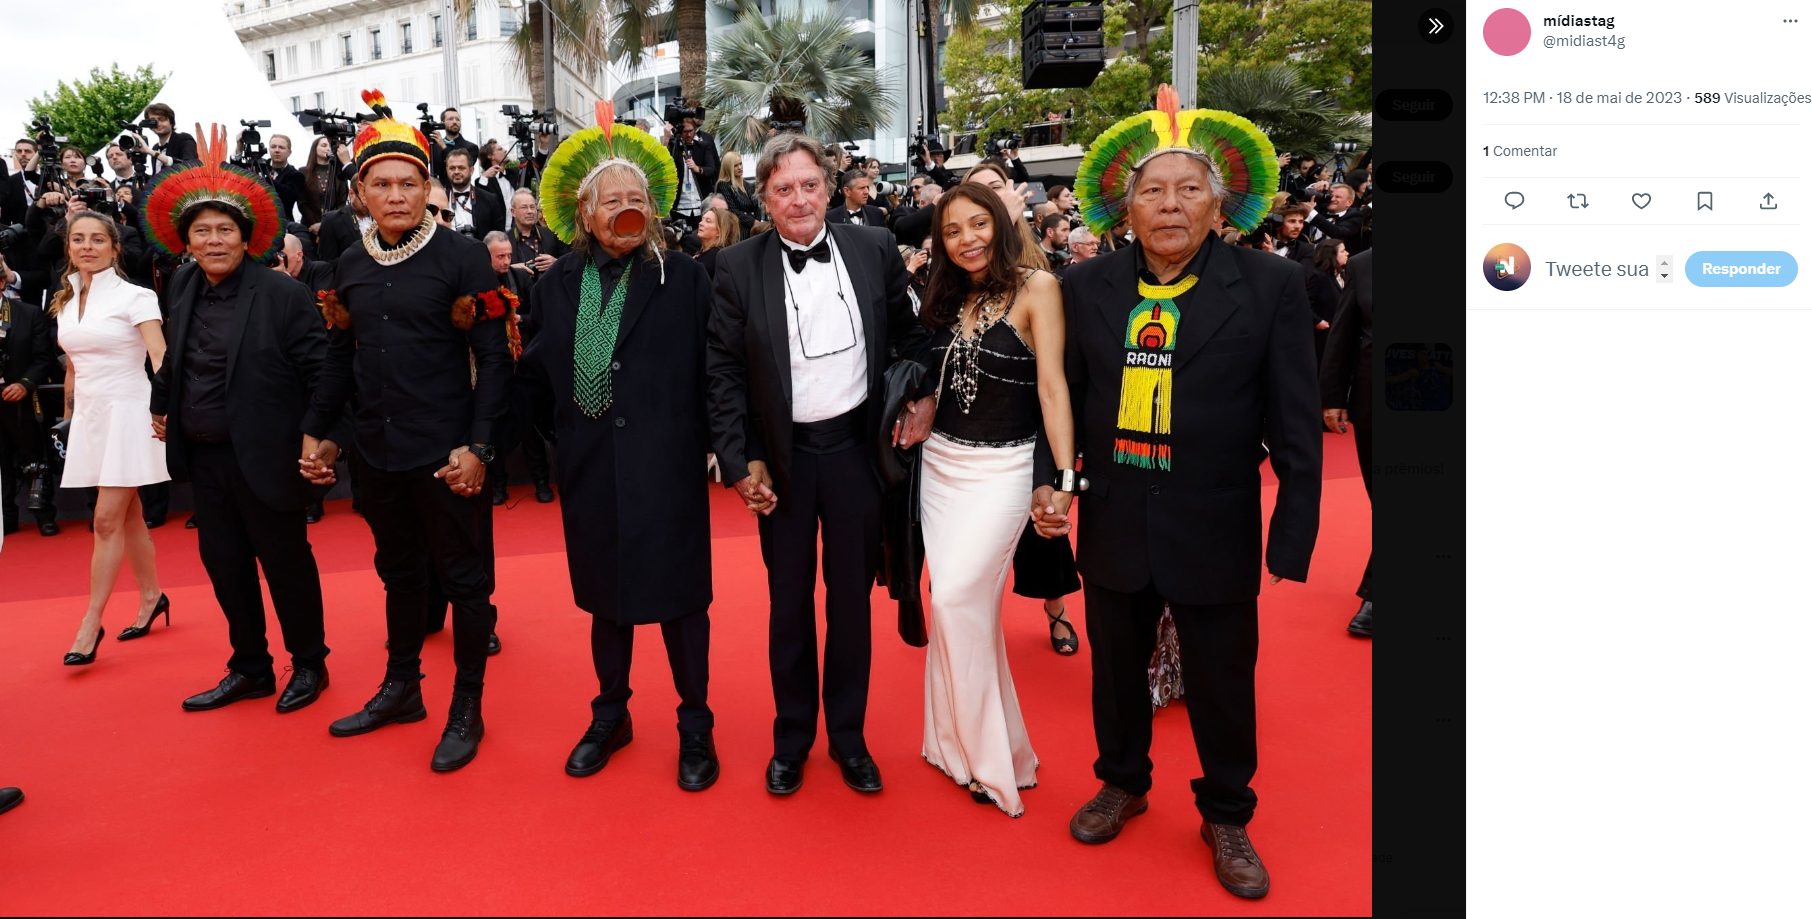 O festival de Cannes é um dos principais eventos do cinema mundial - Foto: Reprodução/Twitter@@midiastag